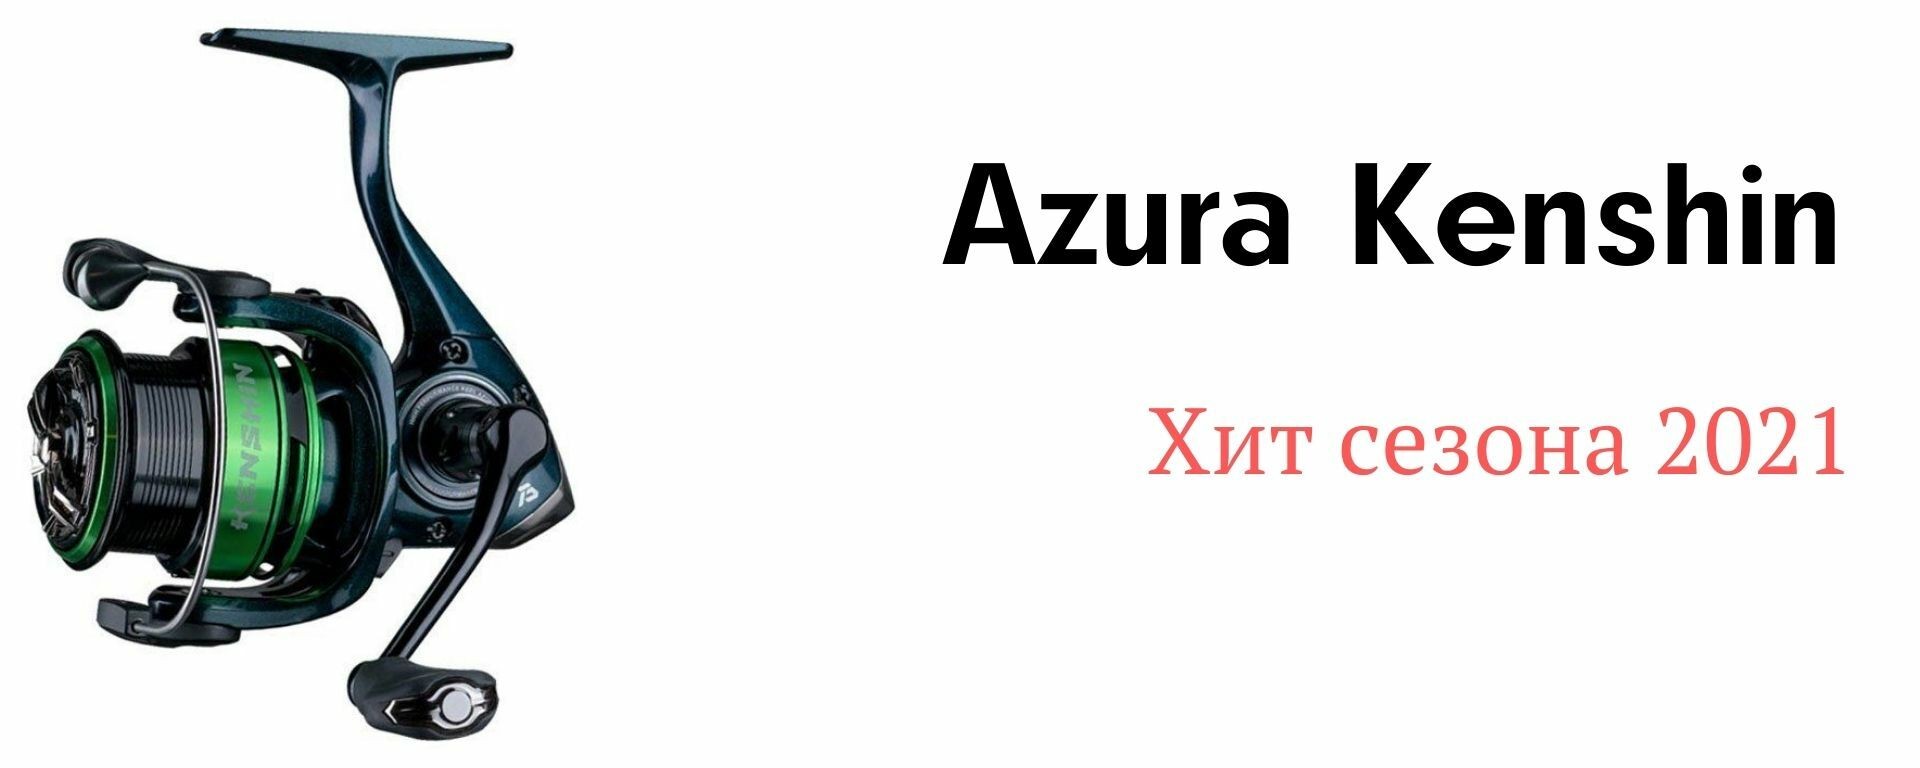 Катушка спиннинговая Azura Kenshin